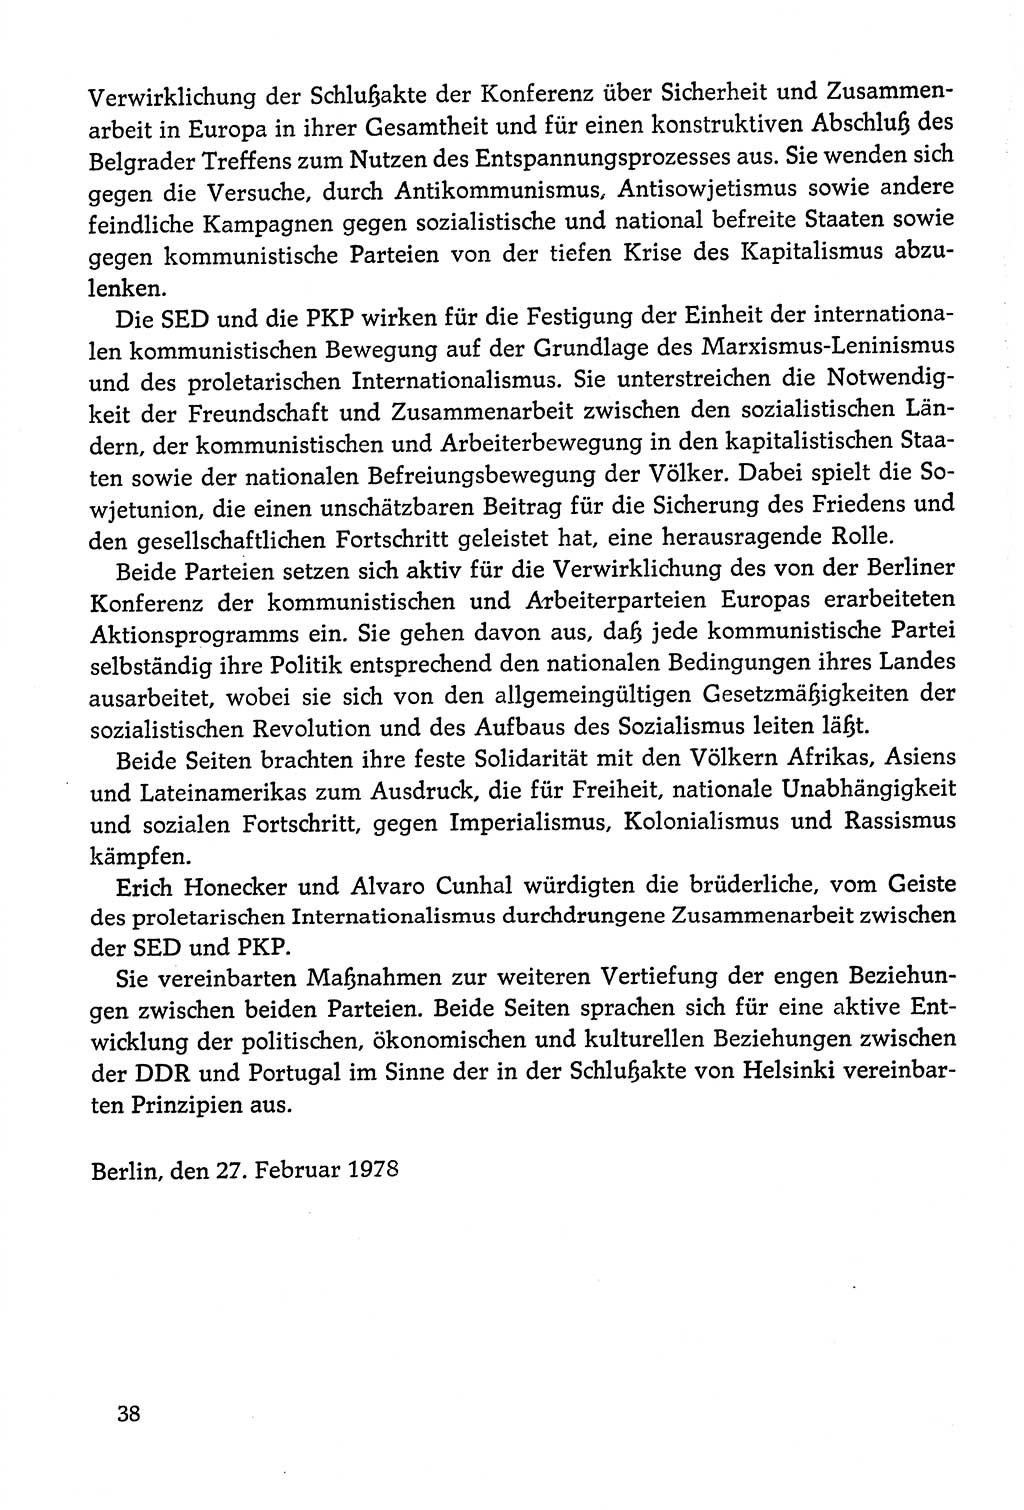 Dokumente der Sozialistischen Einheitspartei Deutschlands (SED) [Deutsche Demokratische Republik (DDR)] 1978-1979, Seite 38 (Dok. SED DDR 1978-1979, S. 38)